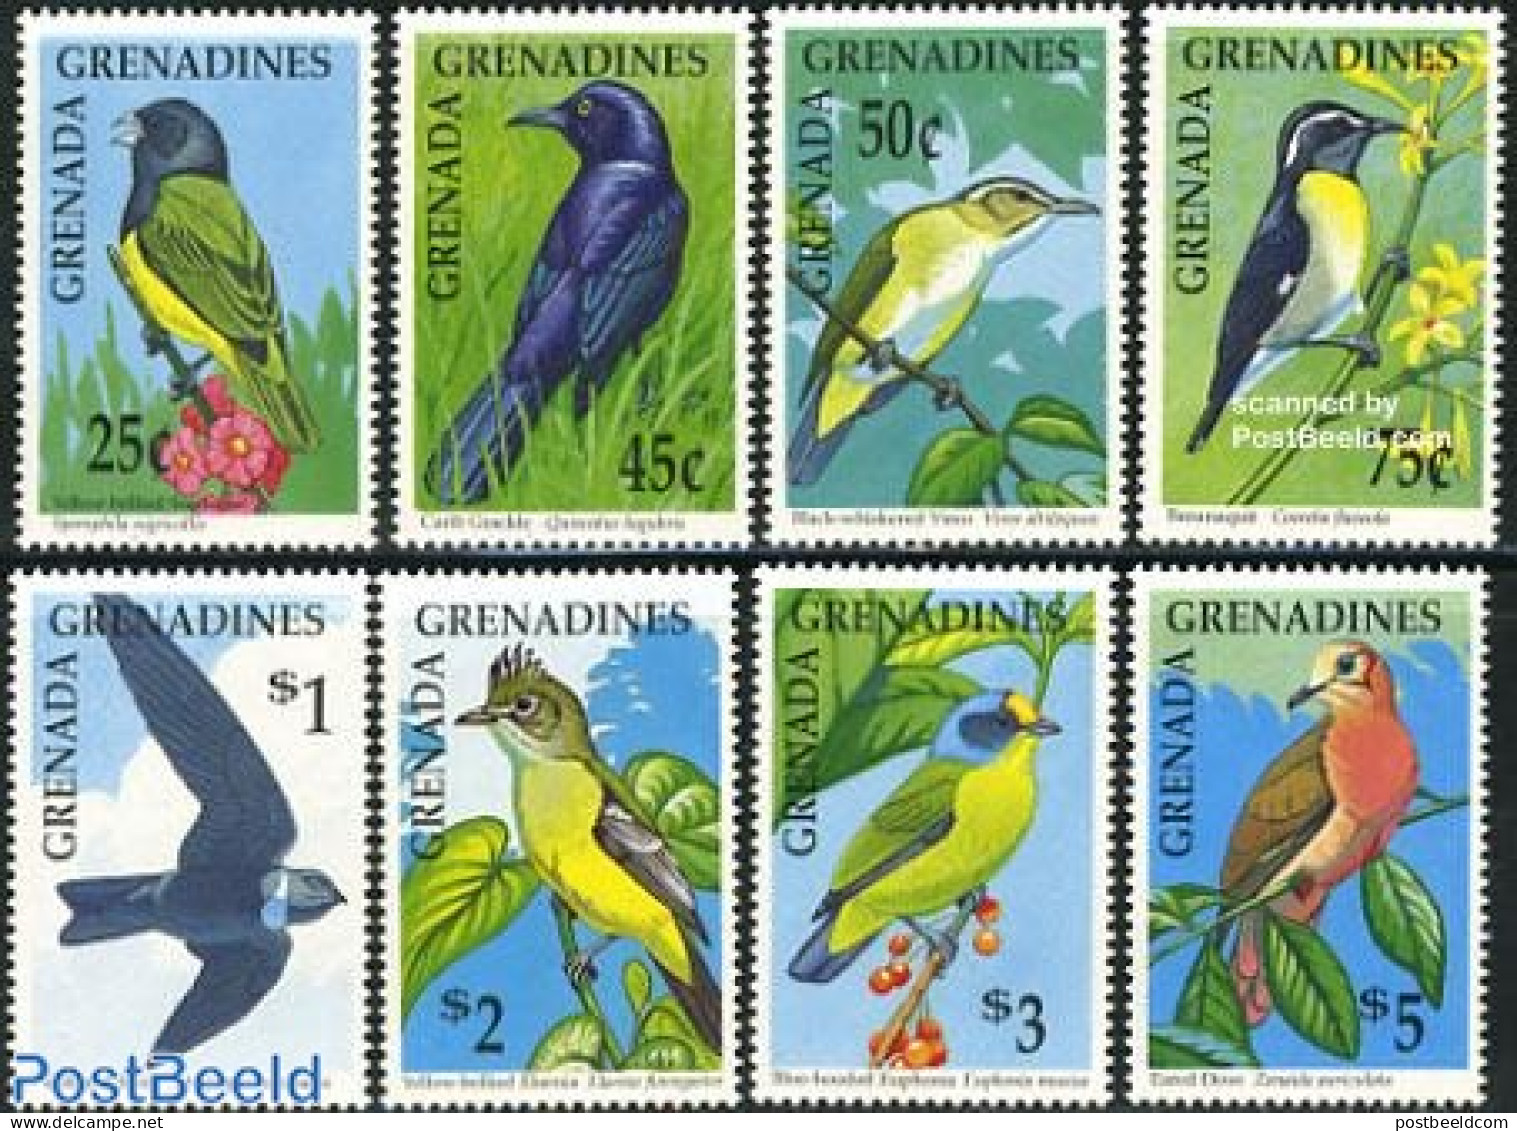 Grenada Grenadines 1990 Birds 8v, Mint NH, Nature - Birds - Grenada (1974-...)